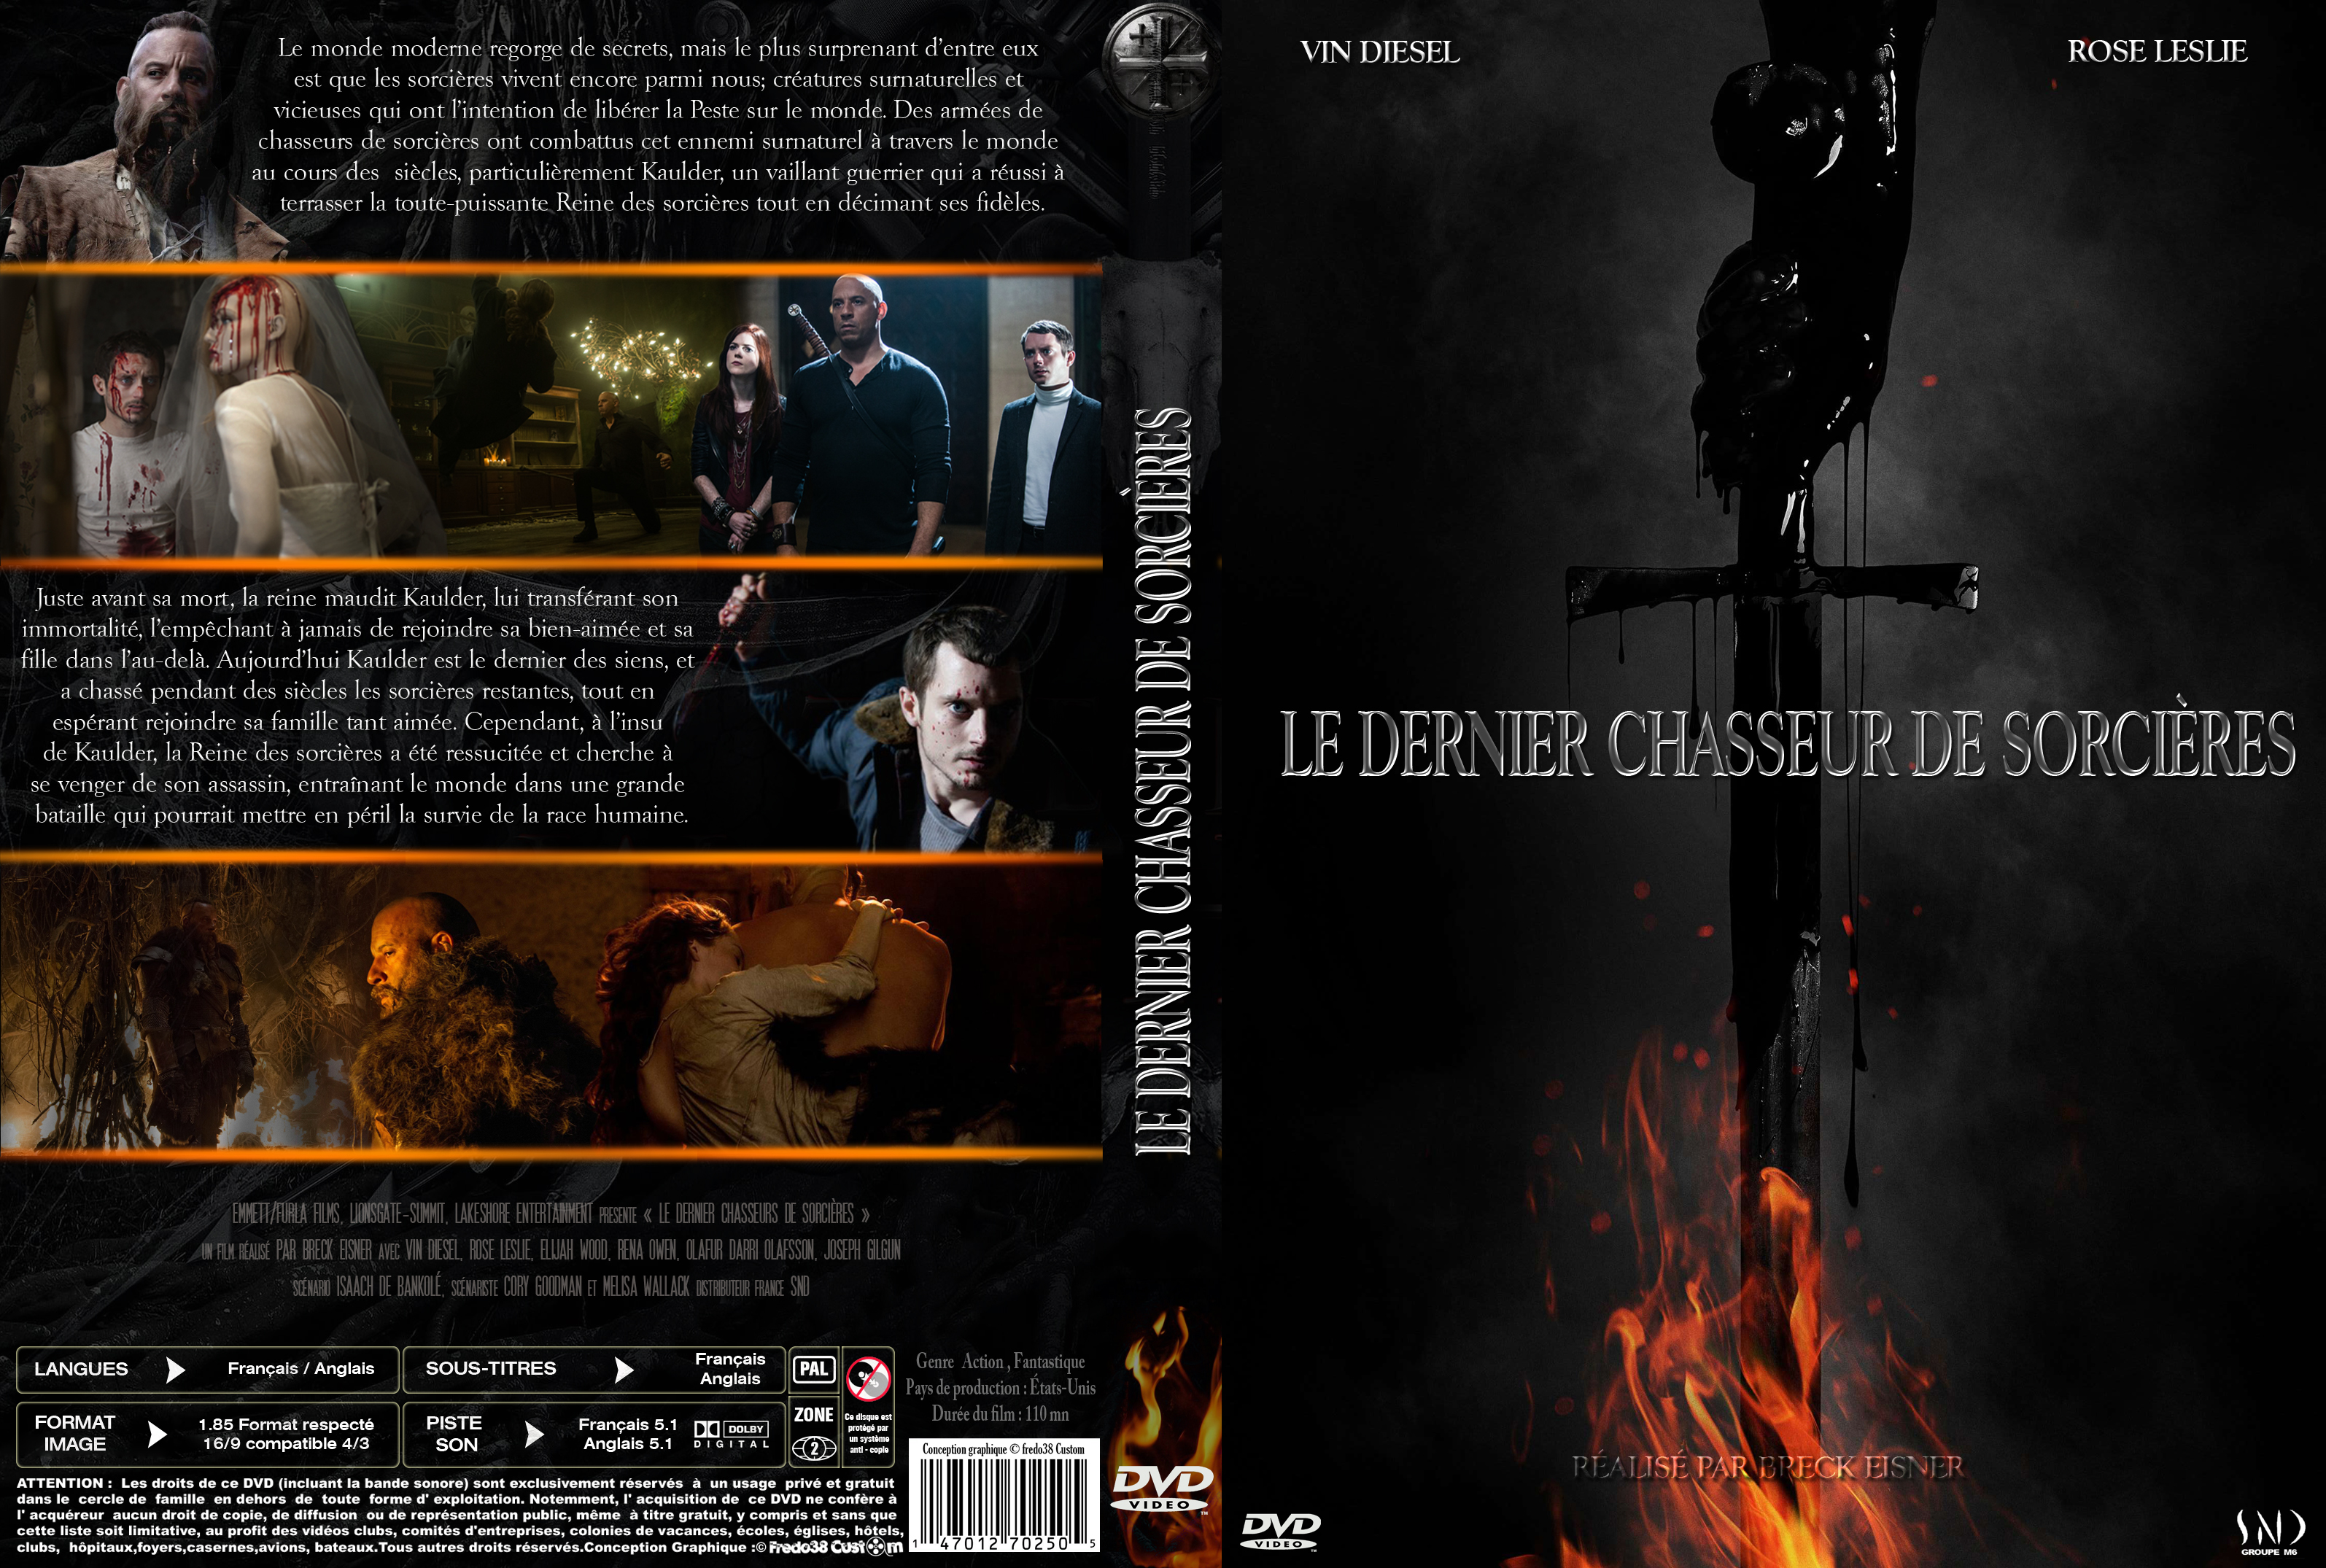 Jaquette DVD The last witch hunter - Le dernier chasseur de sorcires custom